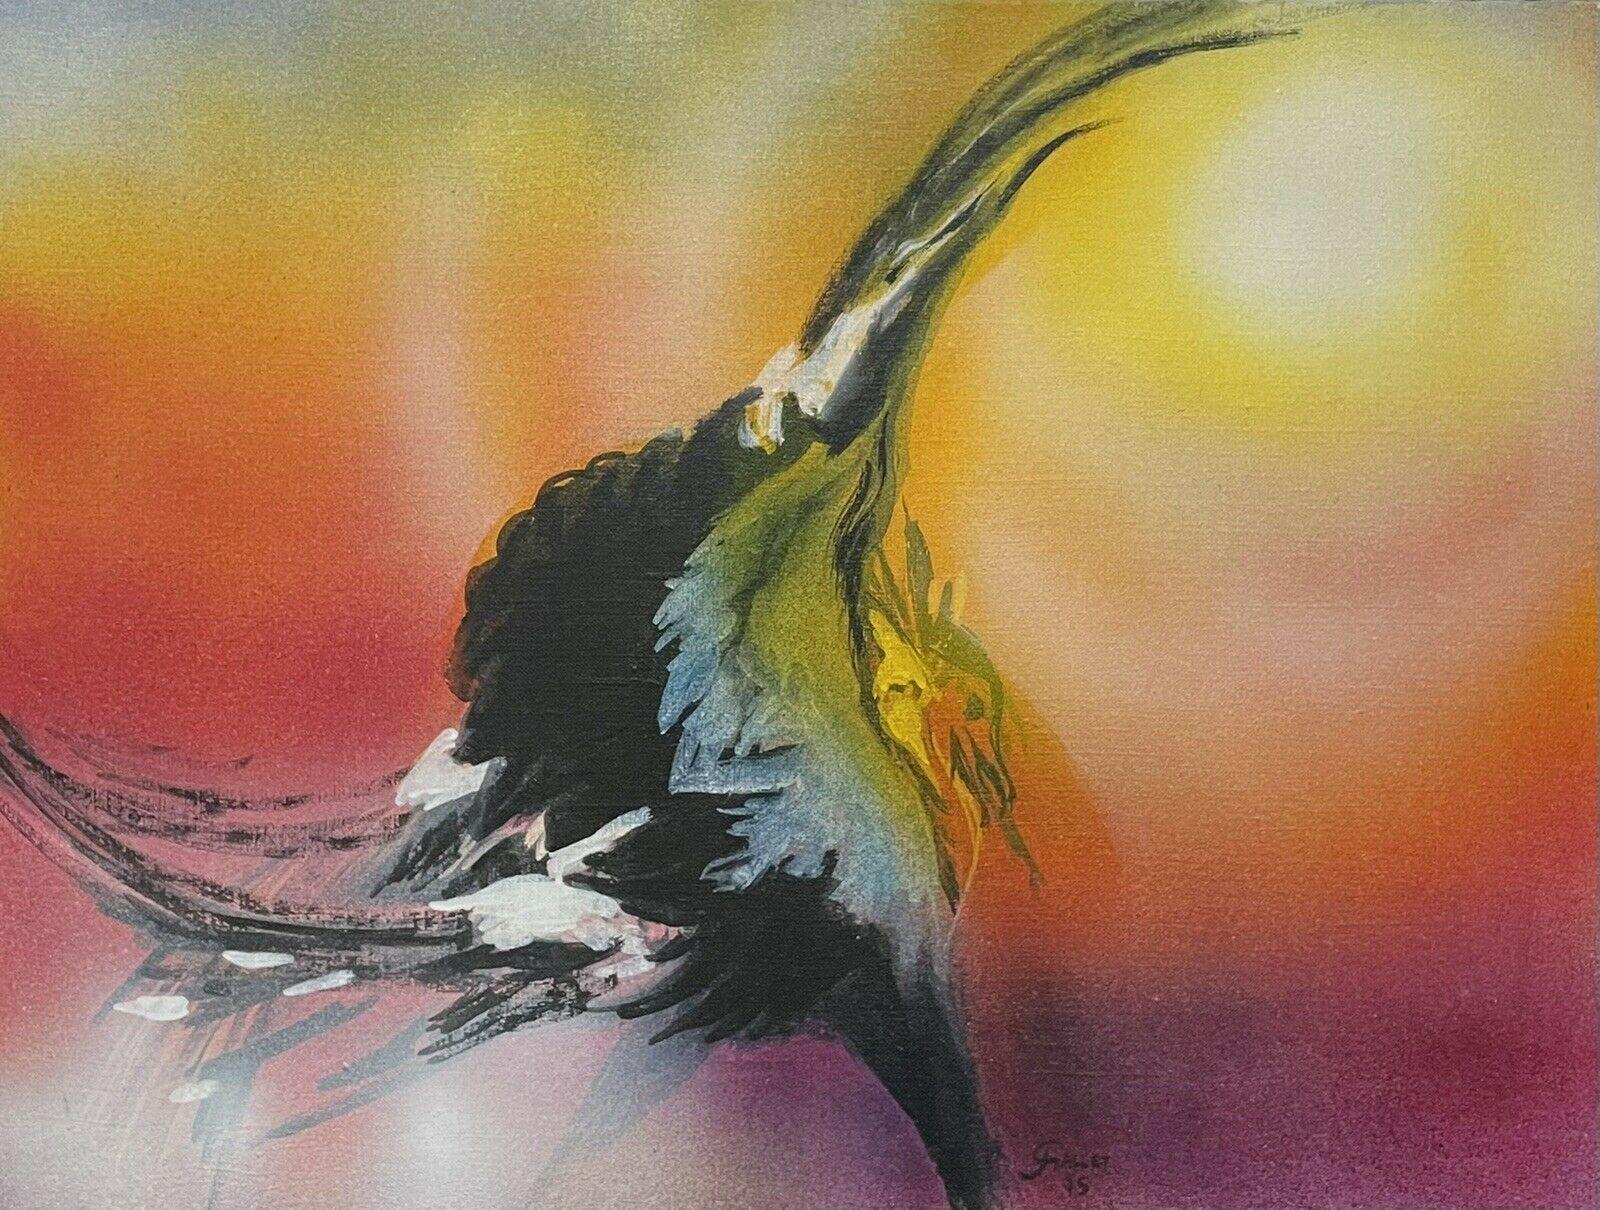 Französisches surrealistisches Fantasie-Ölgemälde, tanzender Vogel, orange-gelber Himmel